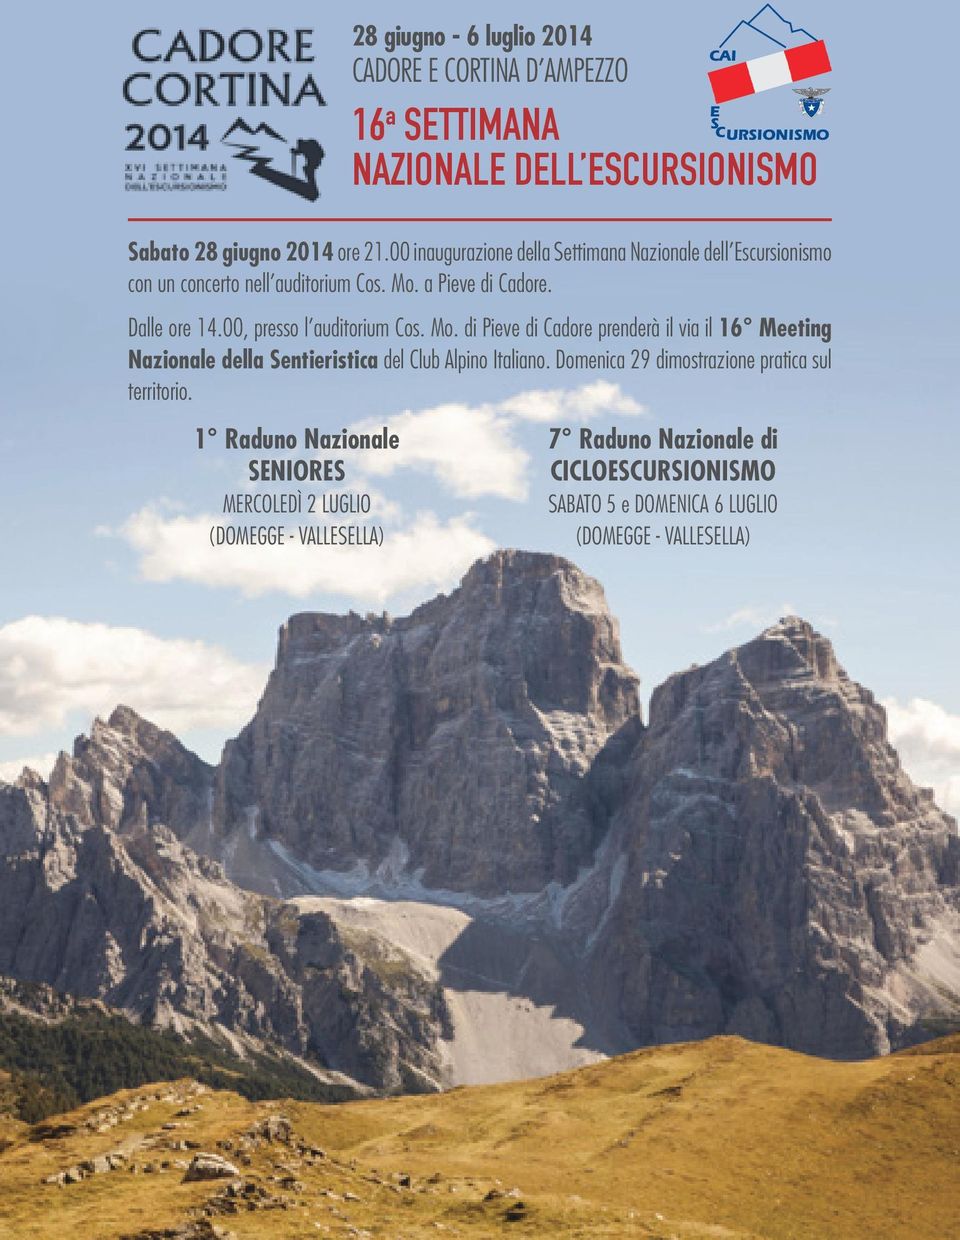 00, presso l auditorium Cos. Mo. di Pieve di Cadore prenderà il via il 16 Meeting Nazionale della Sentieristica del Club Alpino Italiano.